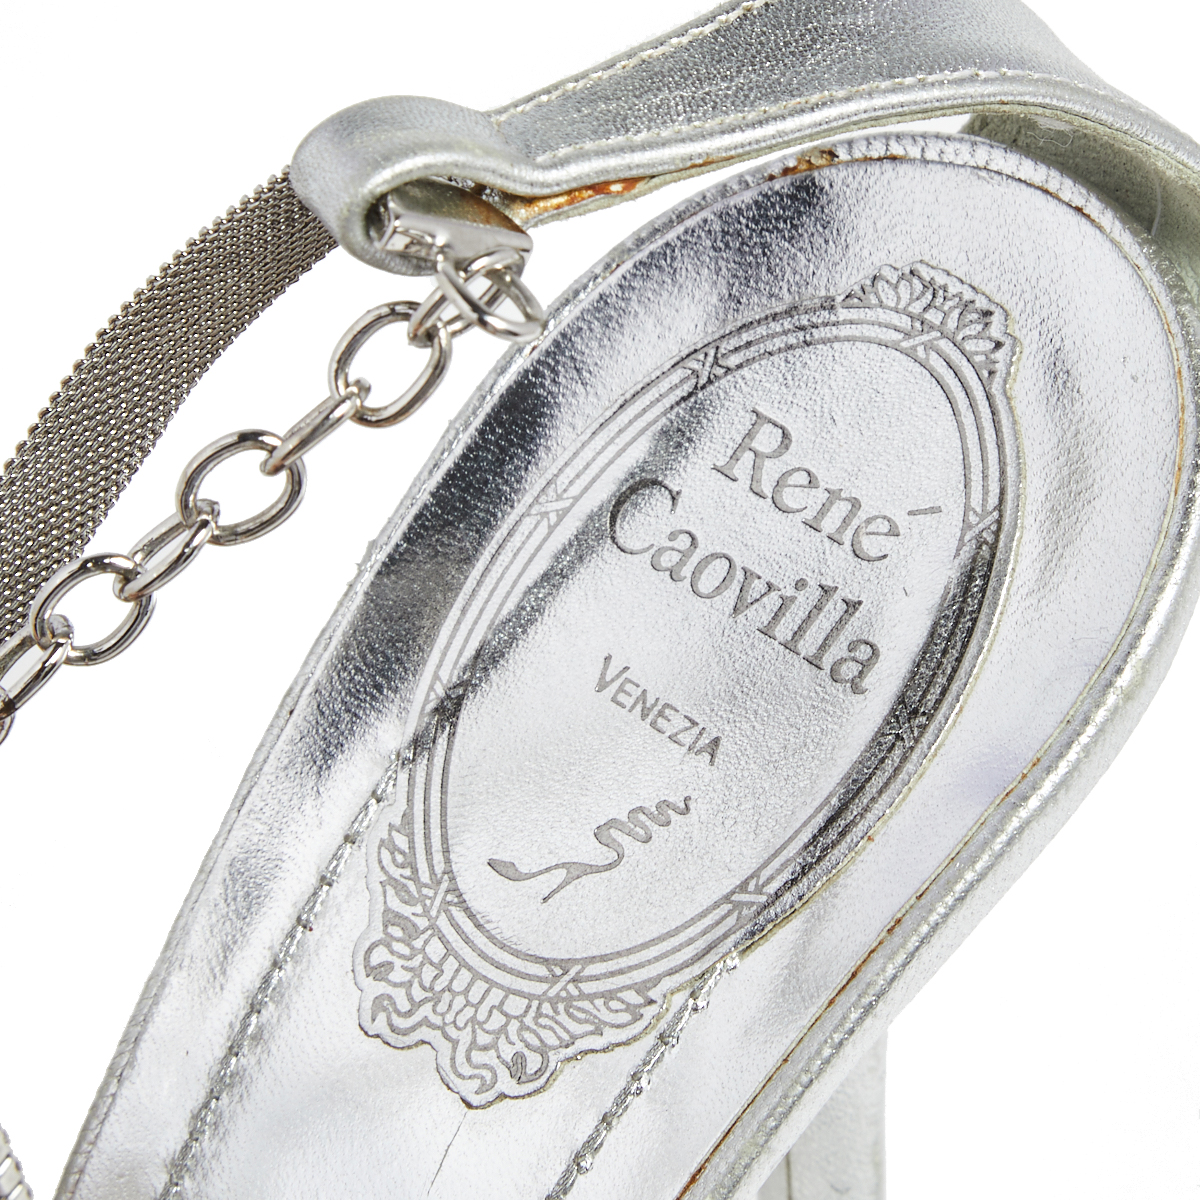 René Caovilla Sliver Leather Embellished Ankle Strap Sandals Size 39